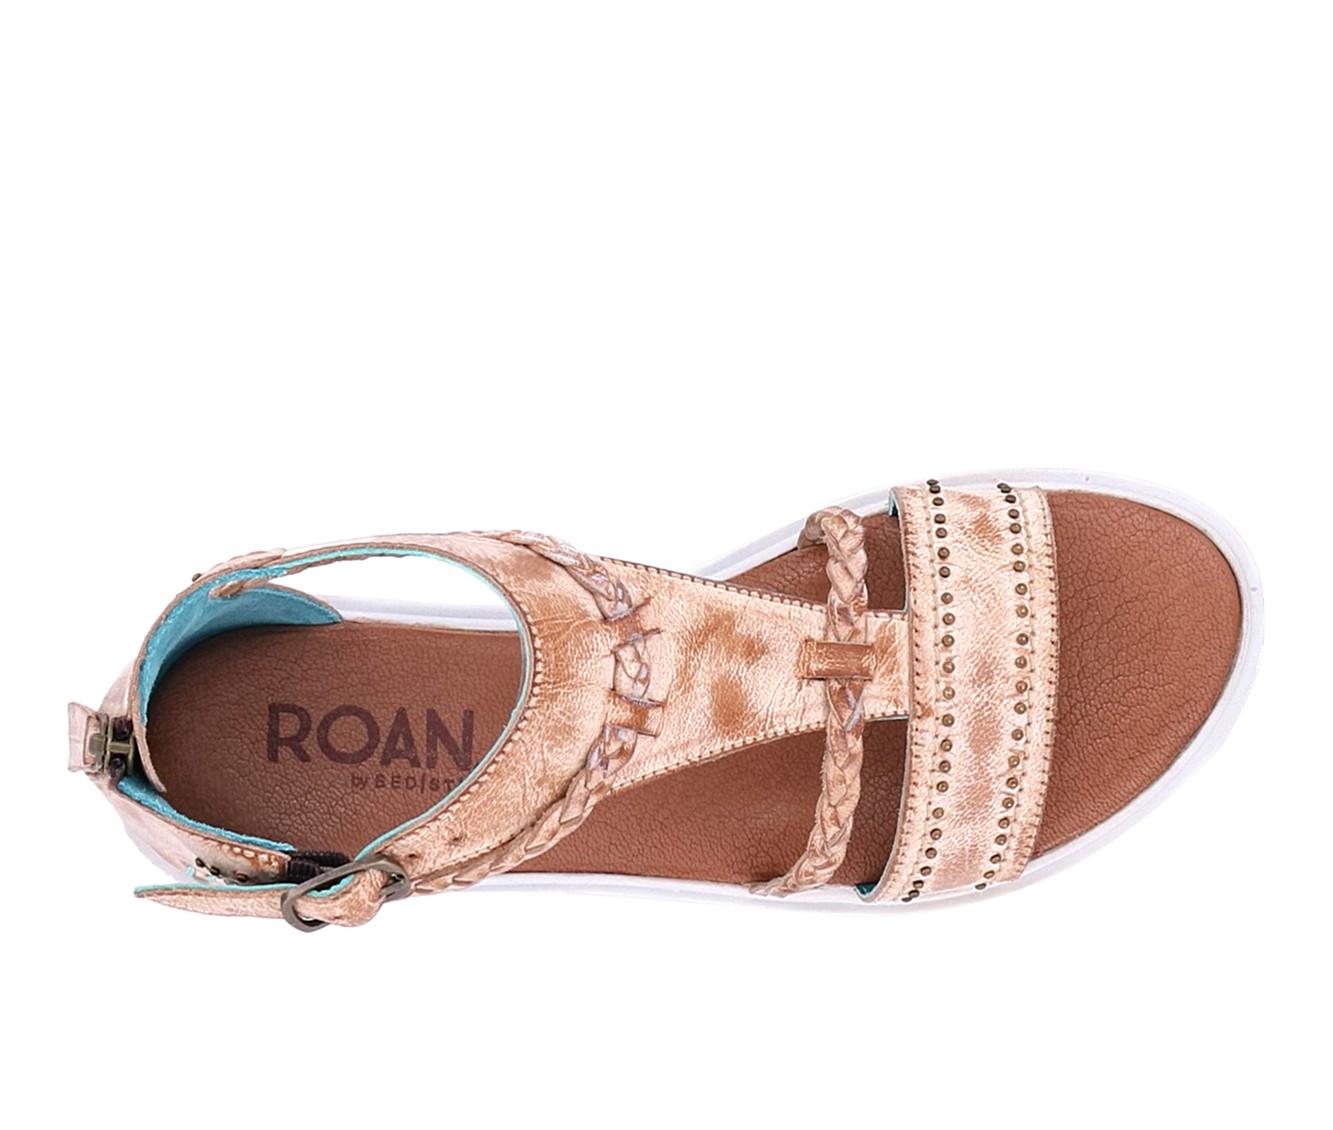 Women's ROAN by BED STU Posey II Platform Sandals